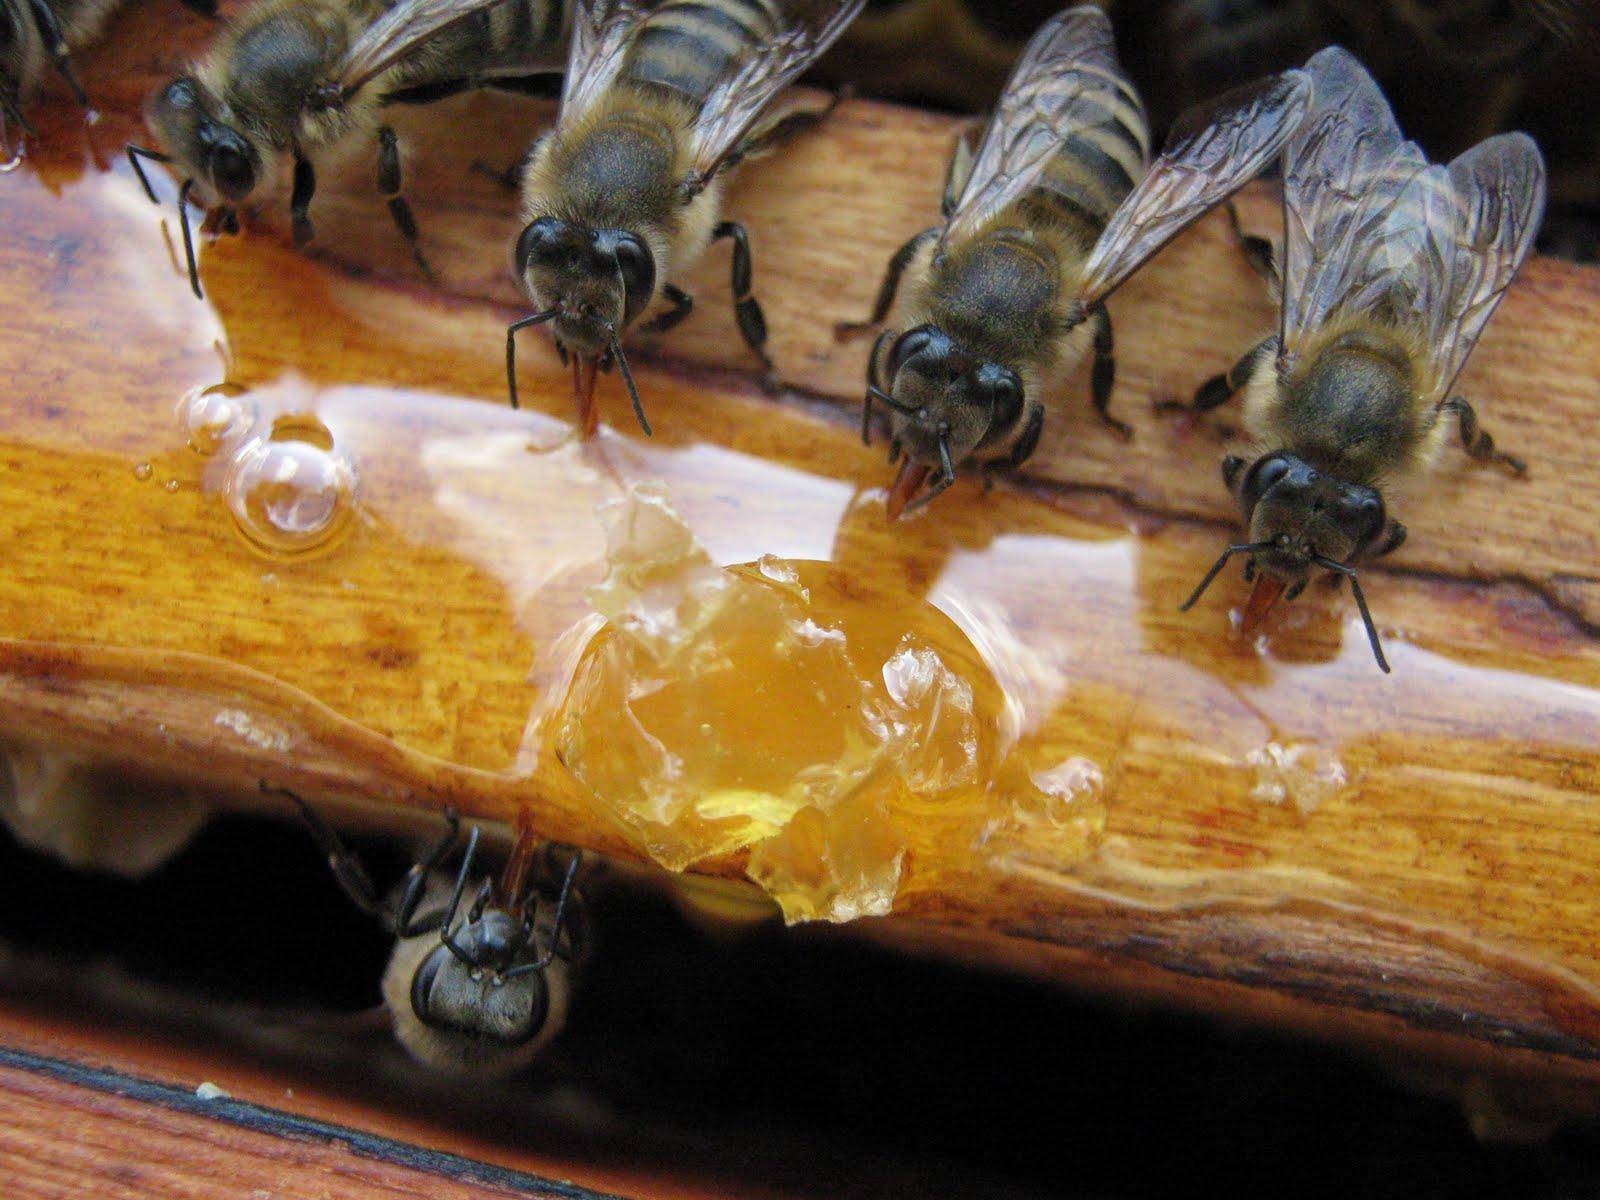 Как создать правильные условия для зимовки пчел в ульях? как зимуют пчелы в природе?